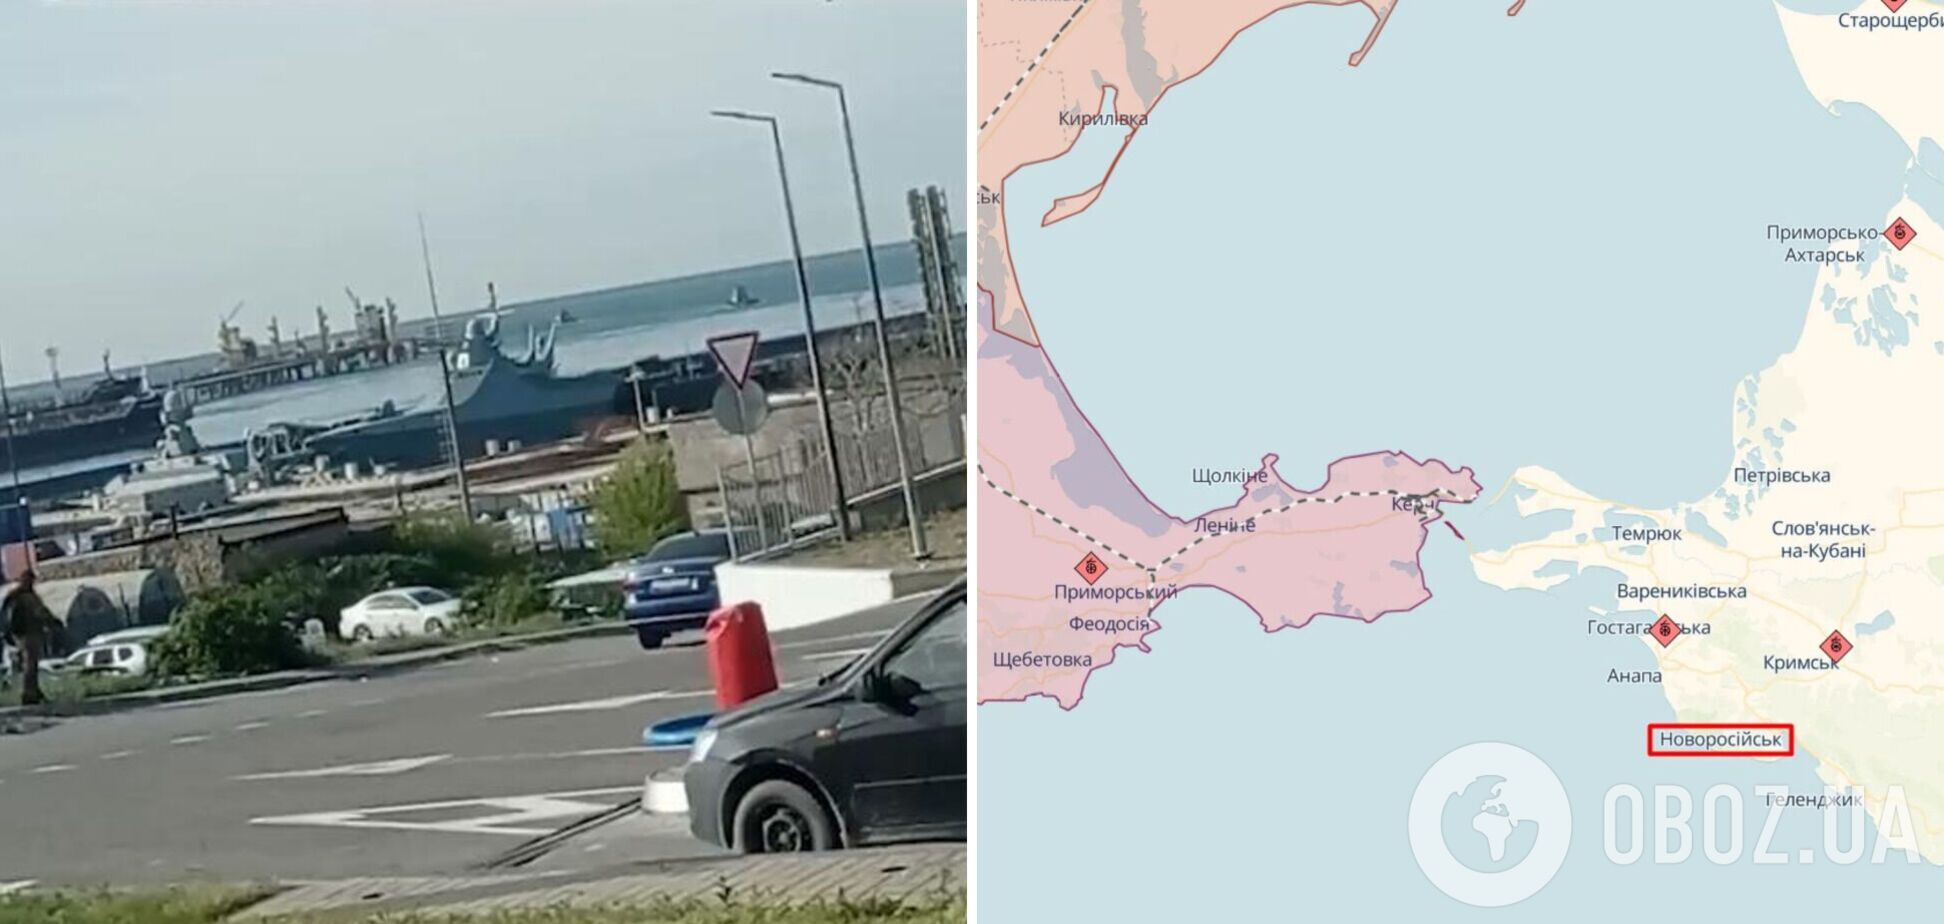 Агенты 'Атеш' разведали военно-морскую базу ЧФ в Новороссийске и намекнули на 'бавовну'. Фото